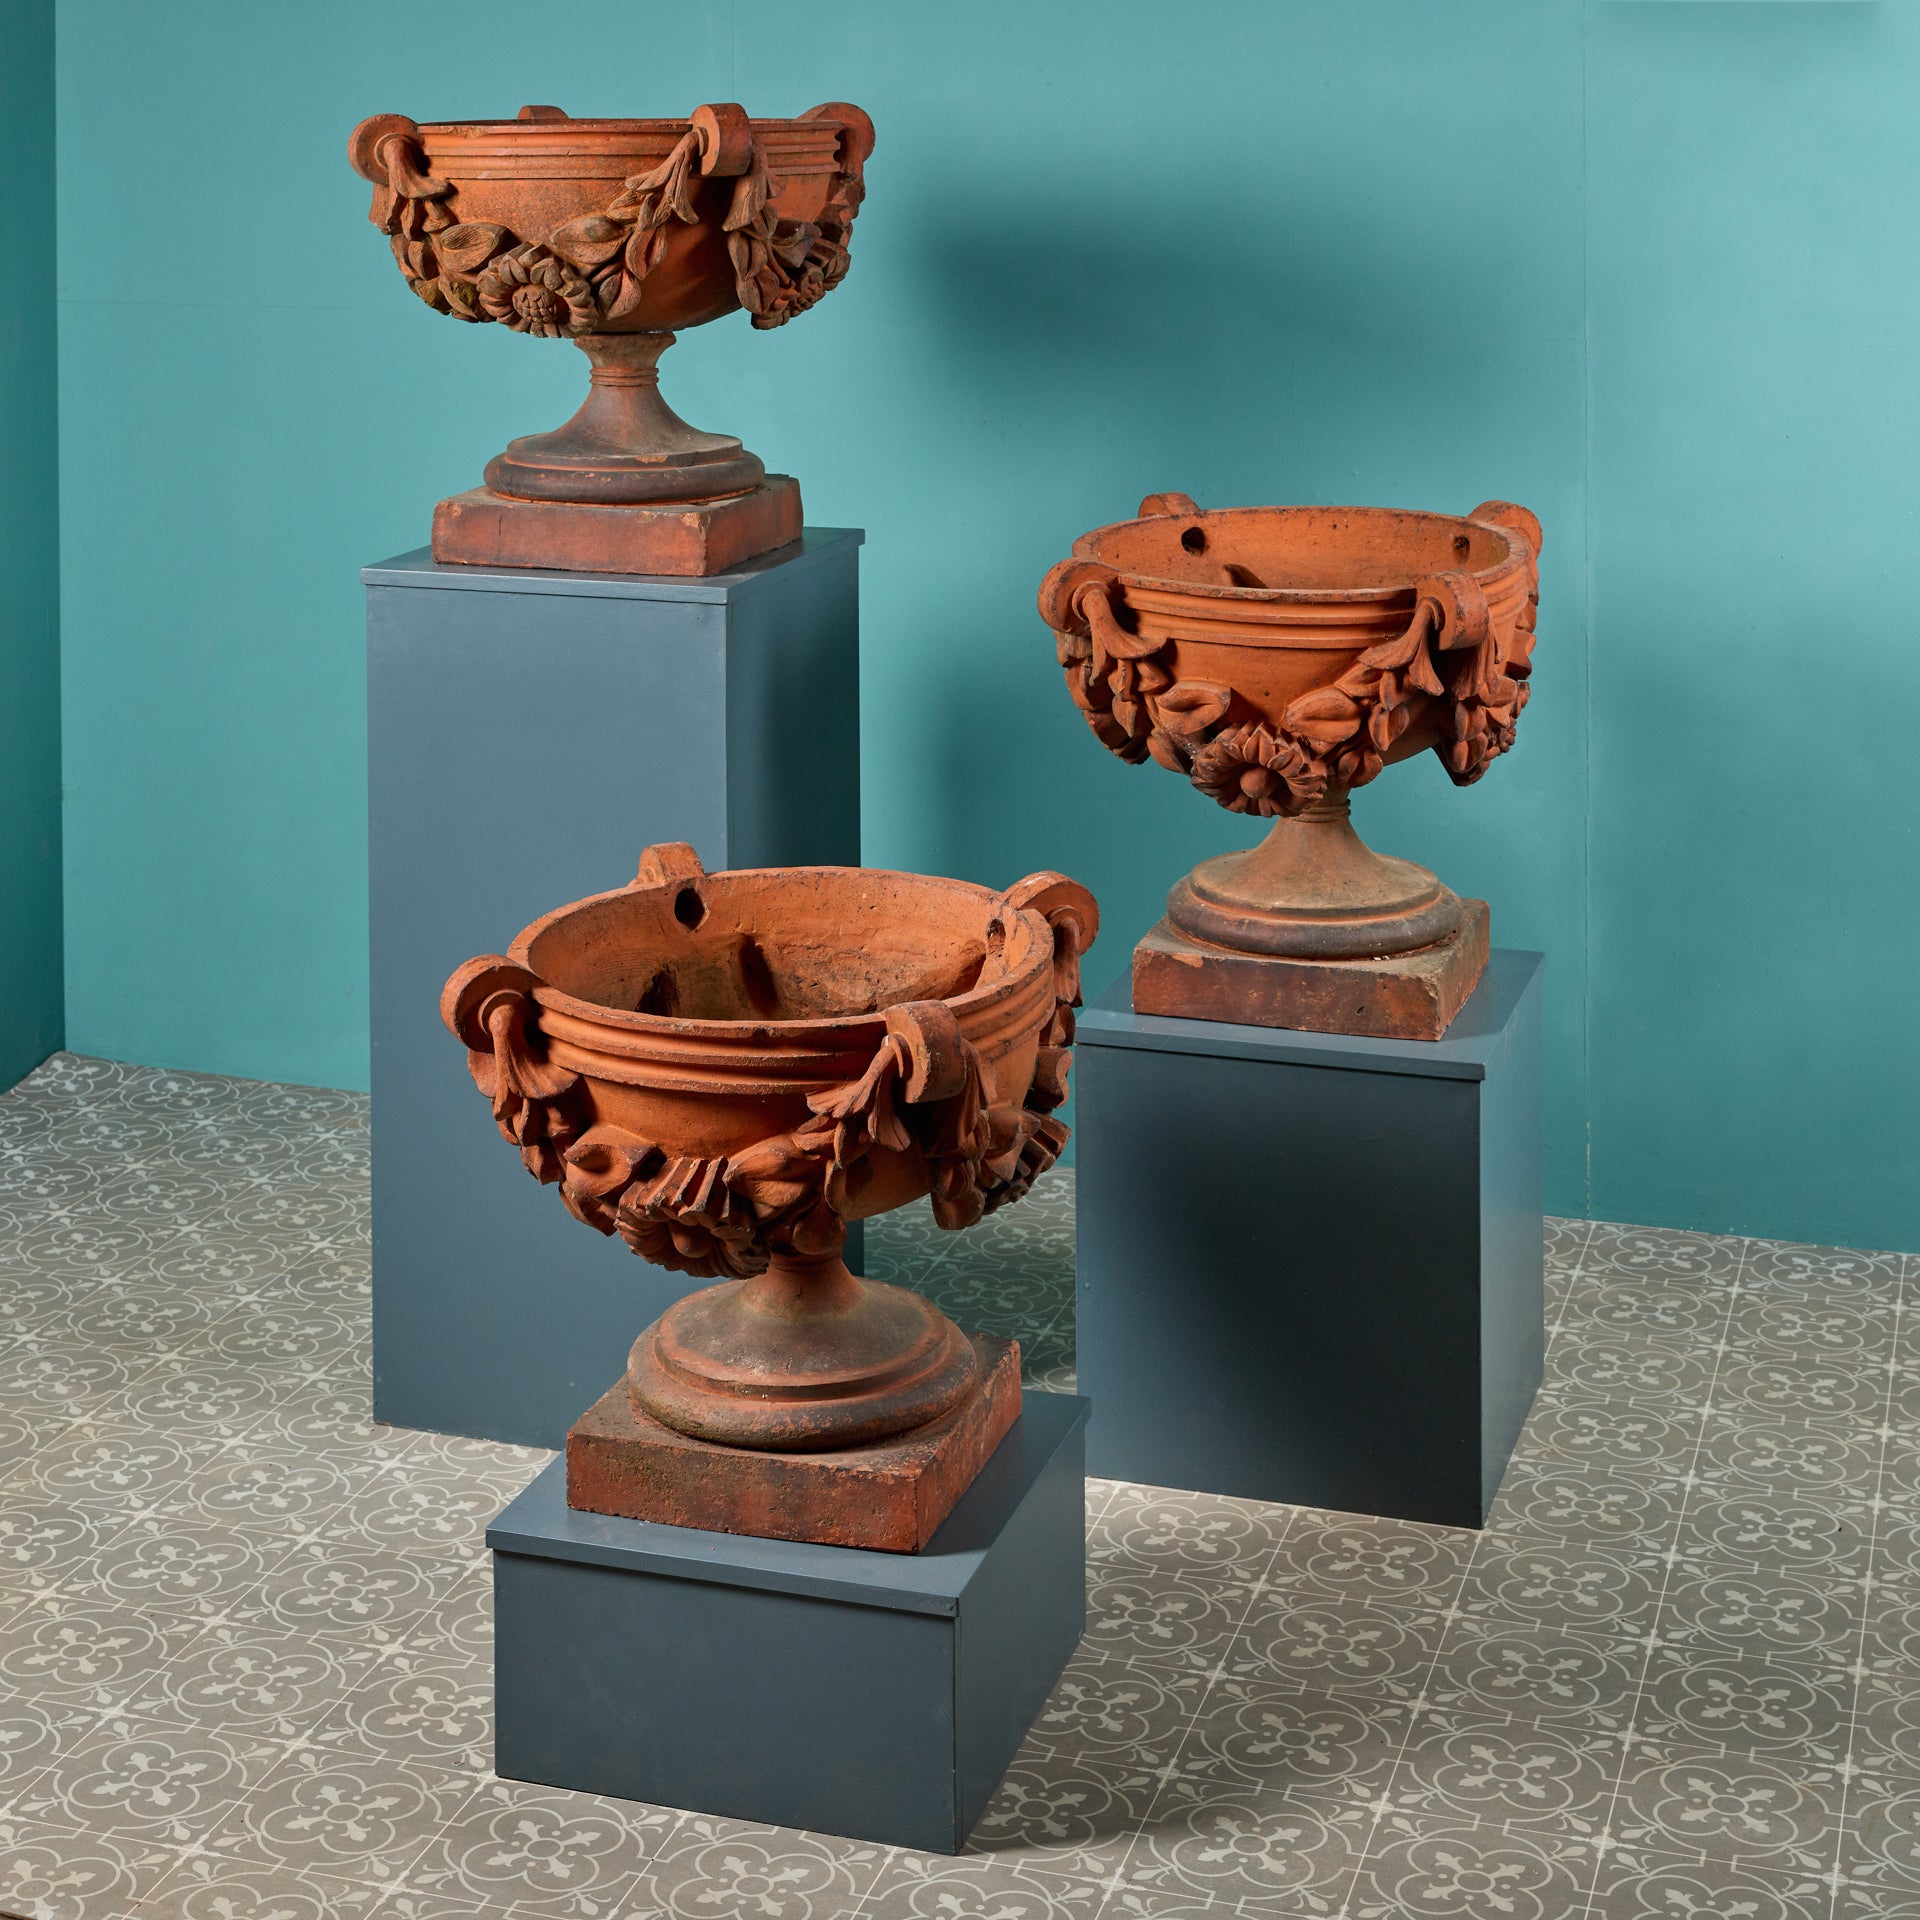 Ein beeindruckender Satz von drei großformatigen antiken Terrakotta-Jardinieren oder Vasen im klassischen Stil, die sich perfekt als Statuen oder Pflanzgefäße im Garten eignen. Diese aus dem England des 19. Jahrhunderts stammenden antiken